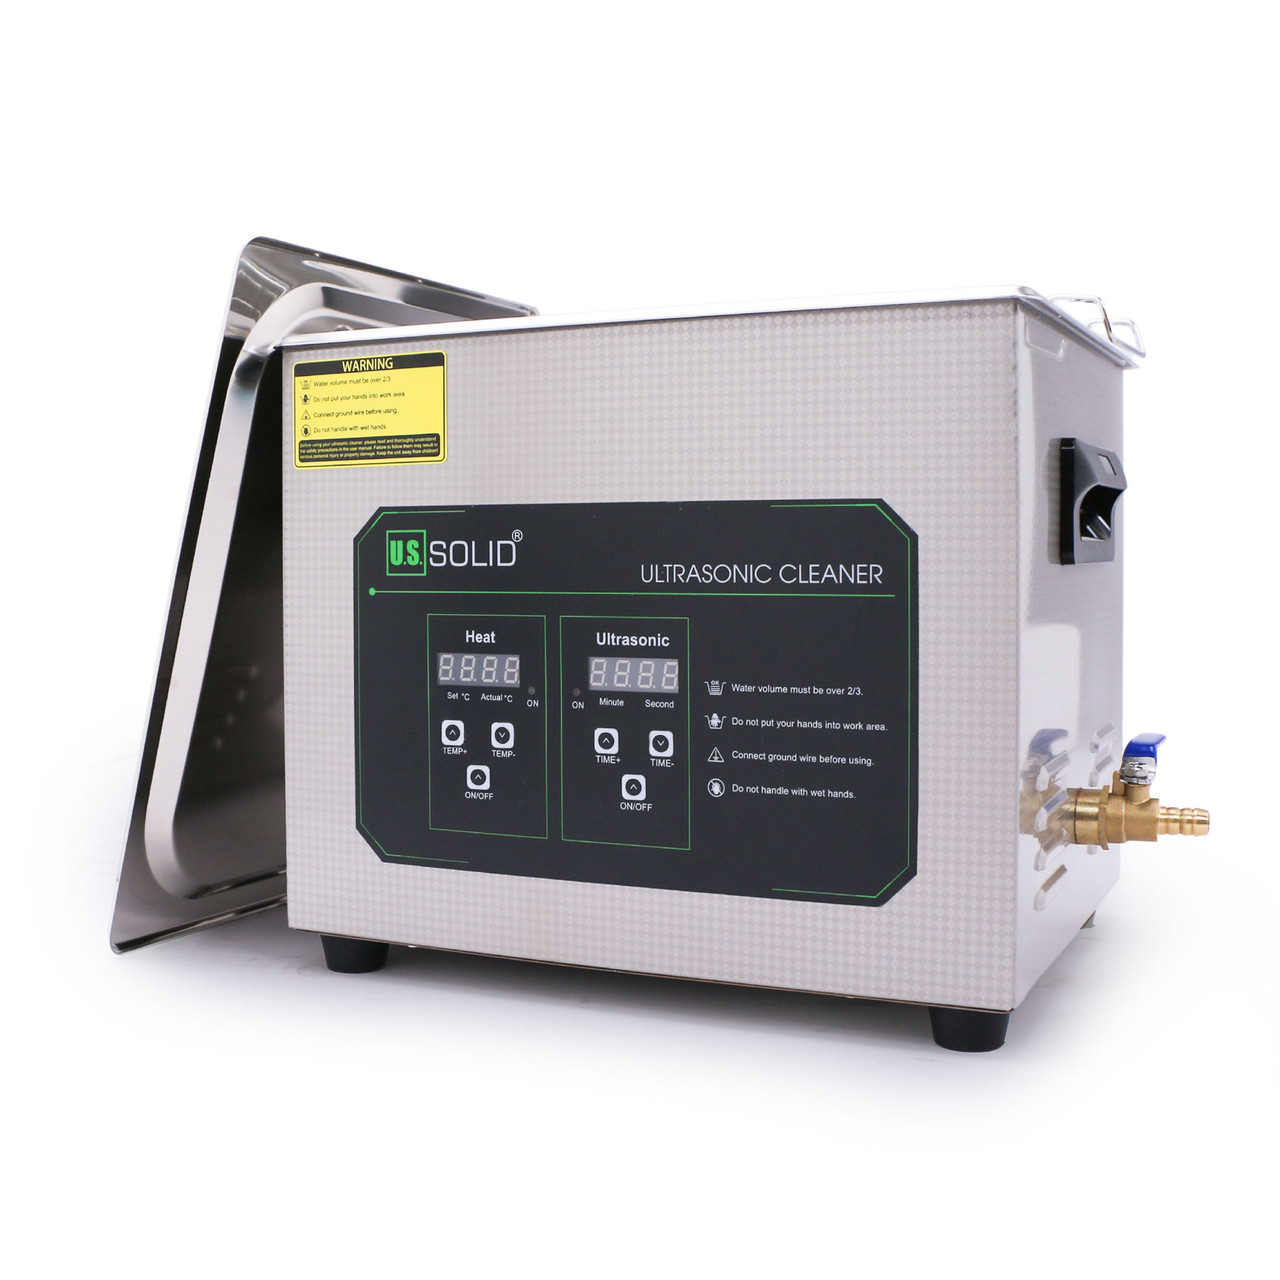 6.5L U.S. Solid Digitaler Ultrasonic Cleaner - 1.7 gal 40 KHz Edelstahl-Ultraschallreinigungsmaschine für Industrie und Schmuck - Max. Heizungstemp. 176℉ - FCC, CE, RoHS, UL zertifiziert